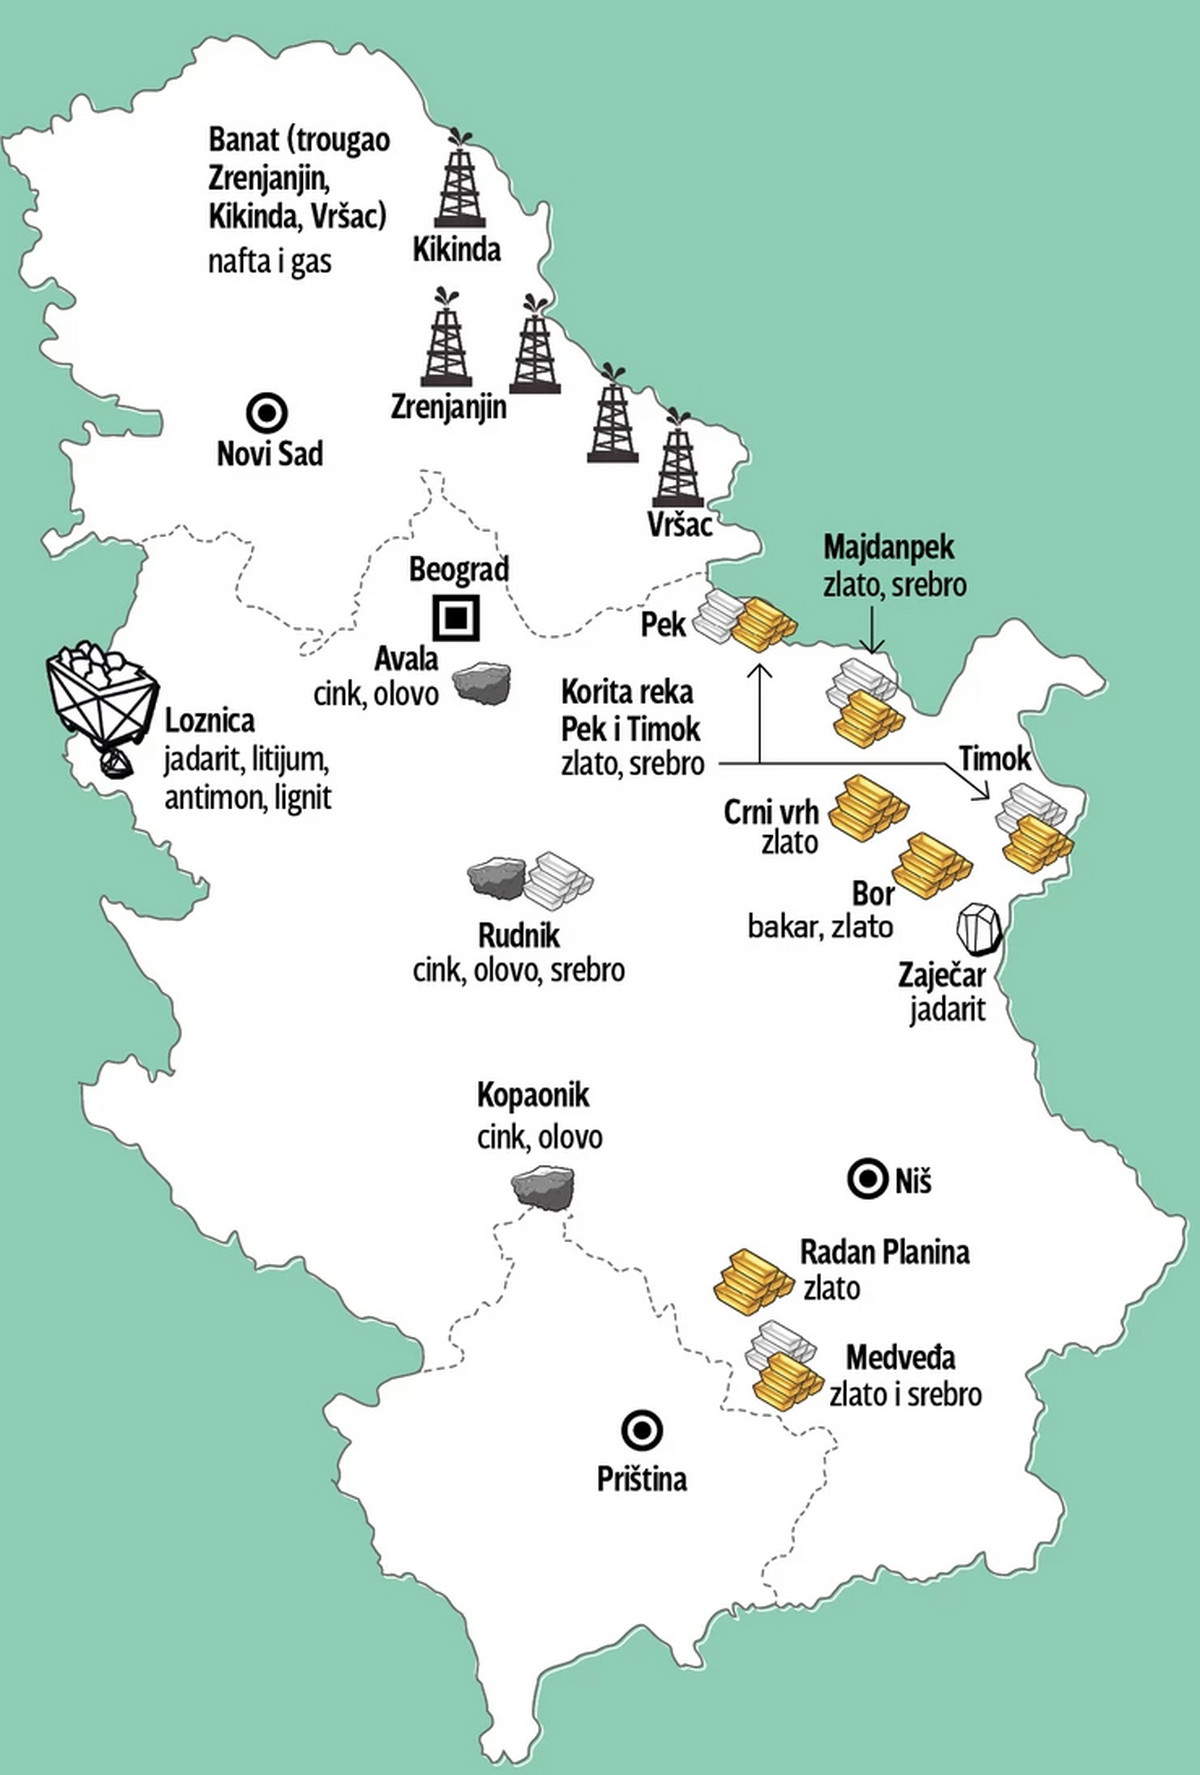 Litijum na kome Srbija bukvalno leži, od juče u svetu zovu i &#34;novim zlatom&#34;: Imamo čak 10% globalnih rezervi, a jedan naš grad pravi je &#34;srećnik&#34;